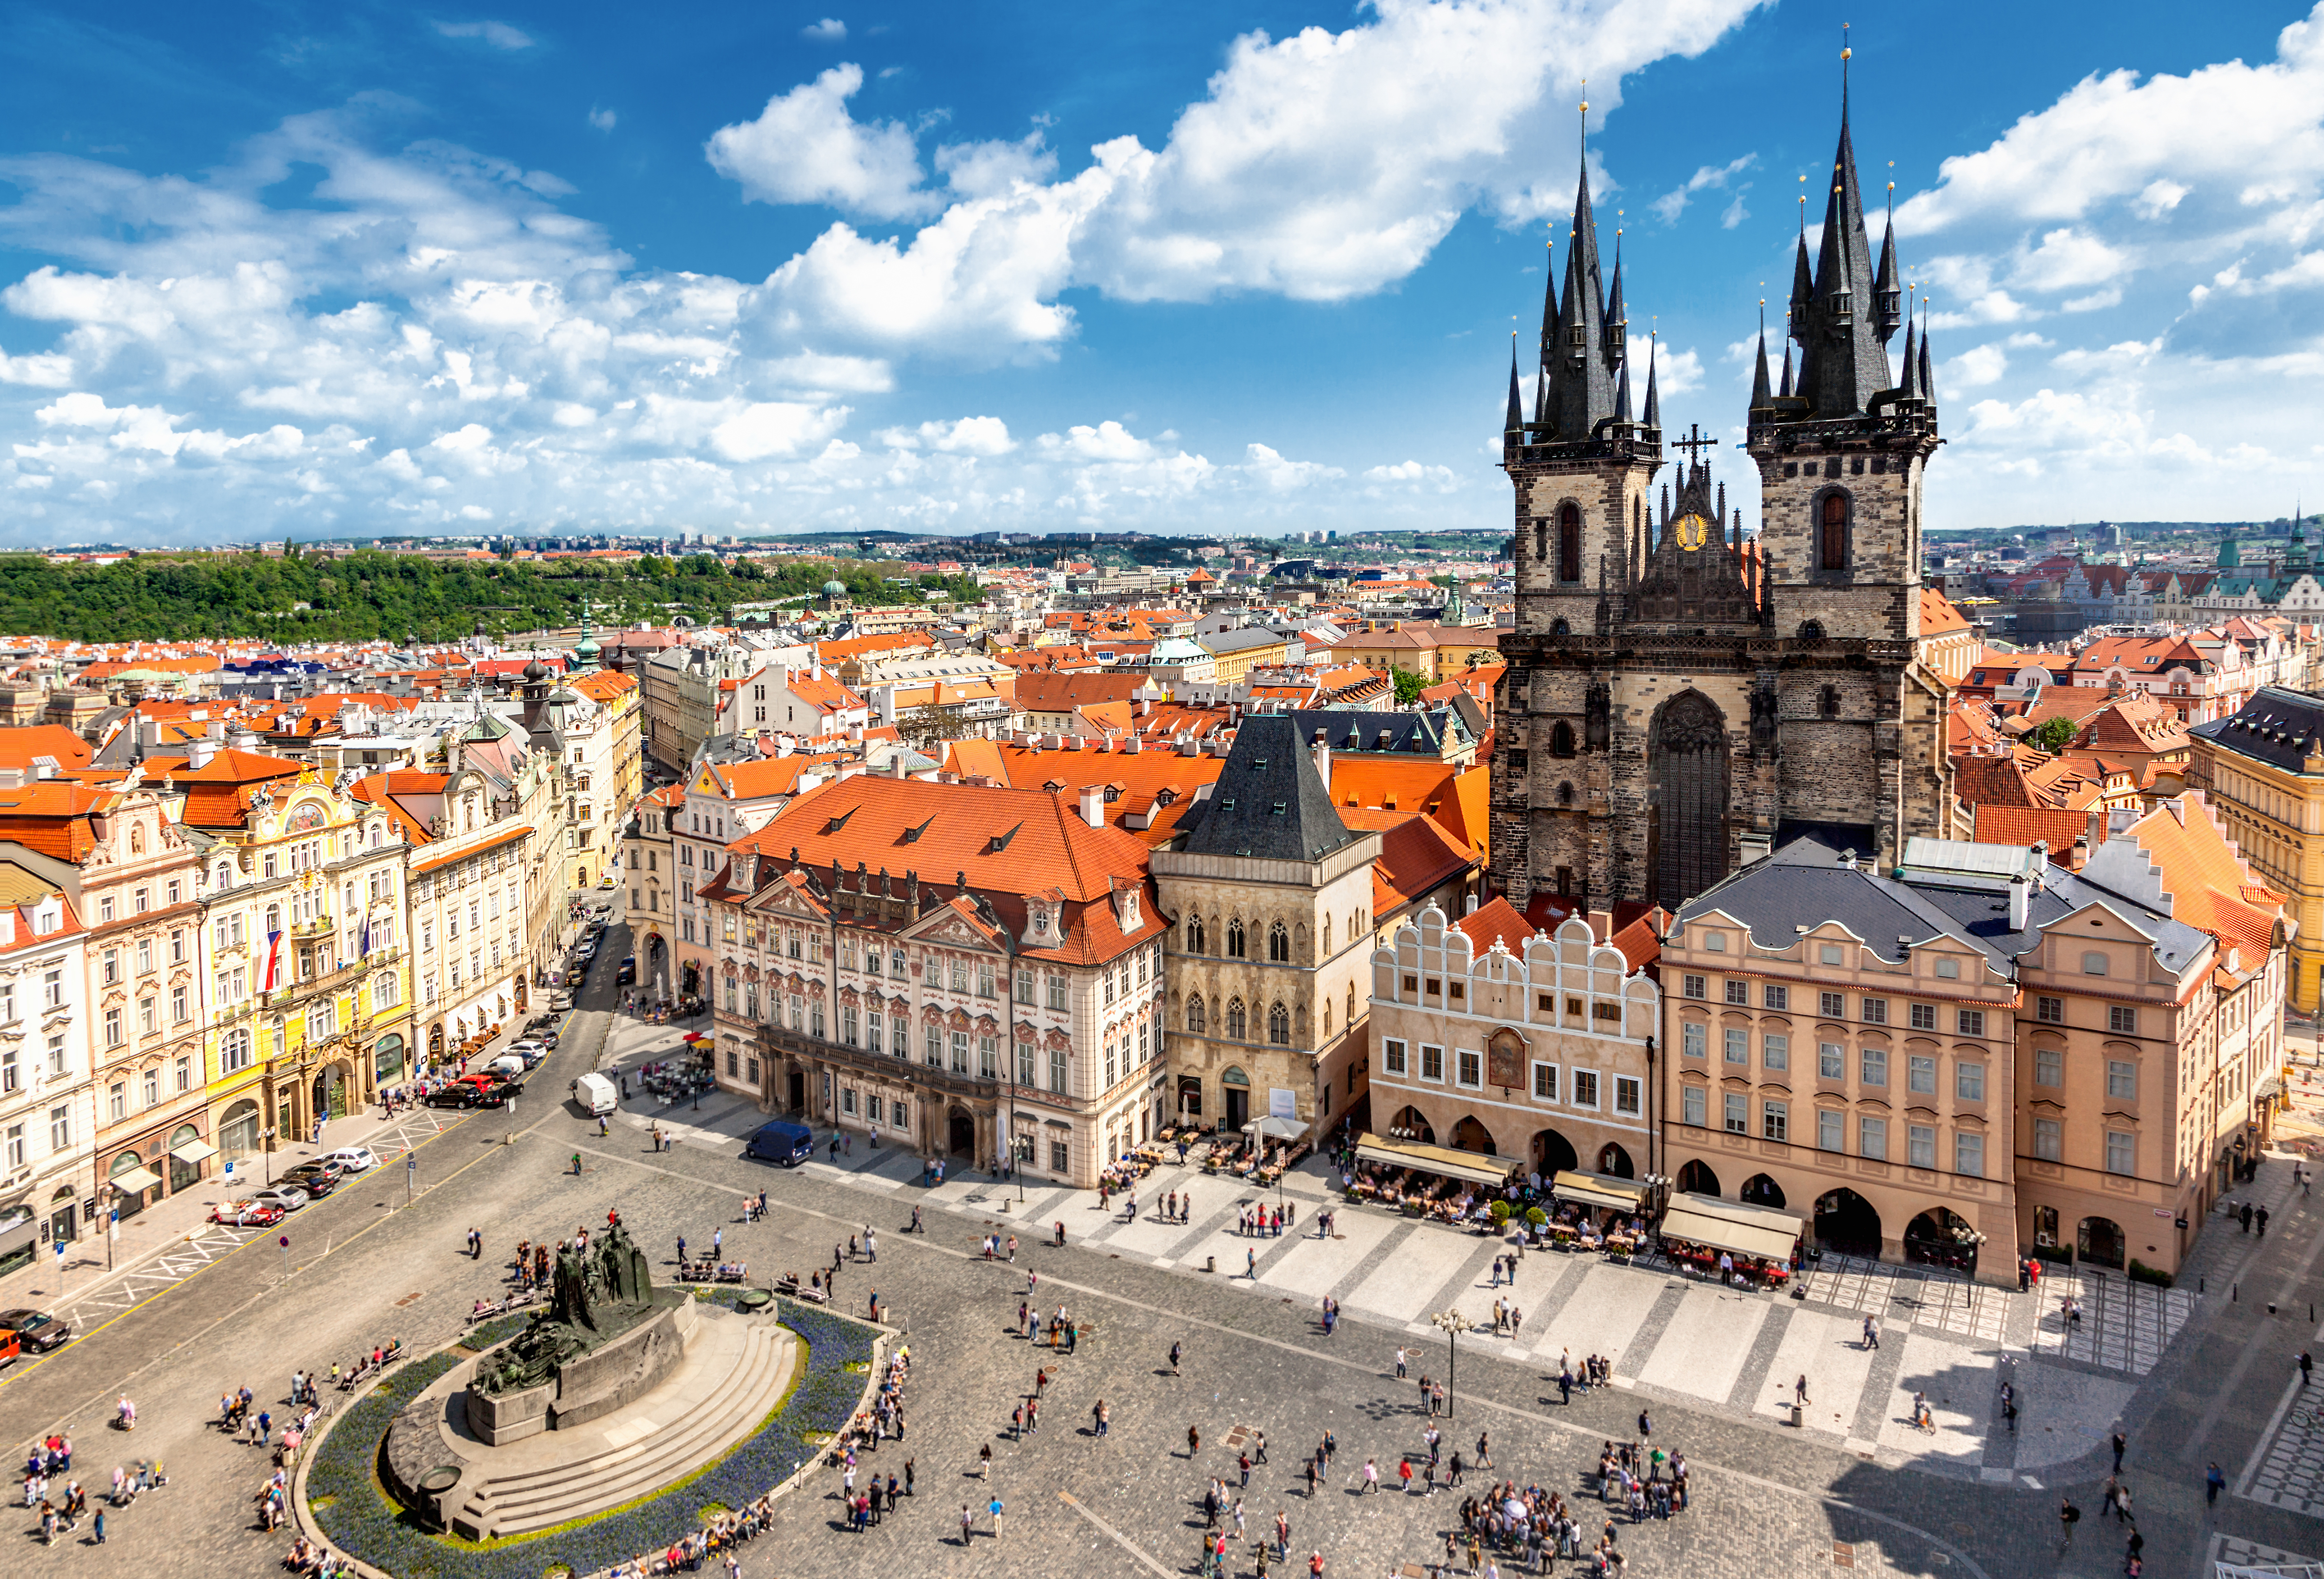 Староместская площадь в Праге, в Чехии, ВНЖ которой могут получить иностранцы